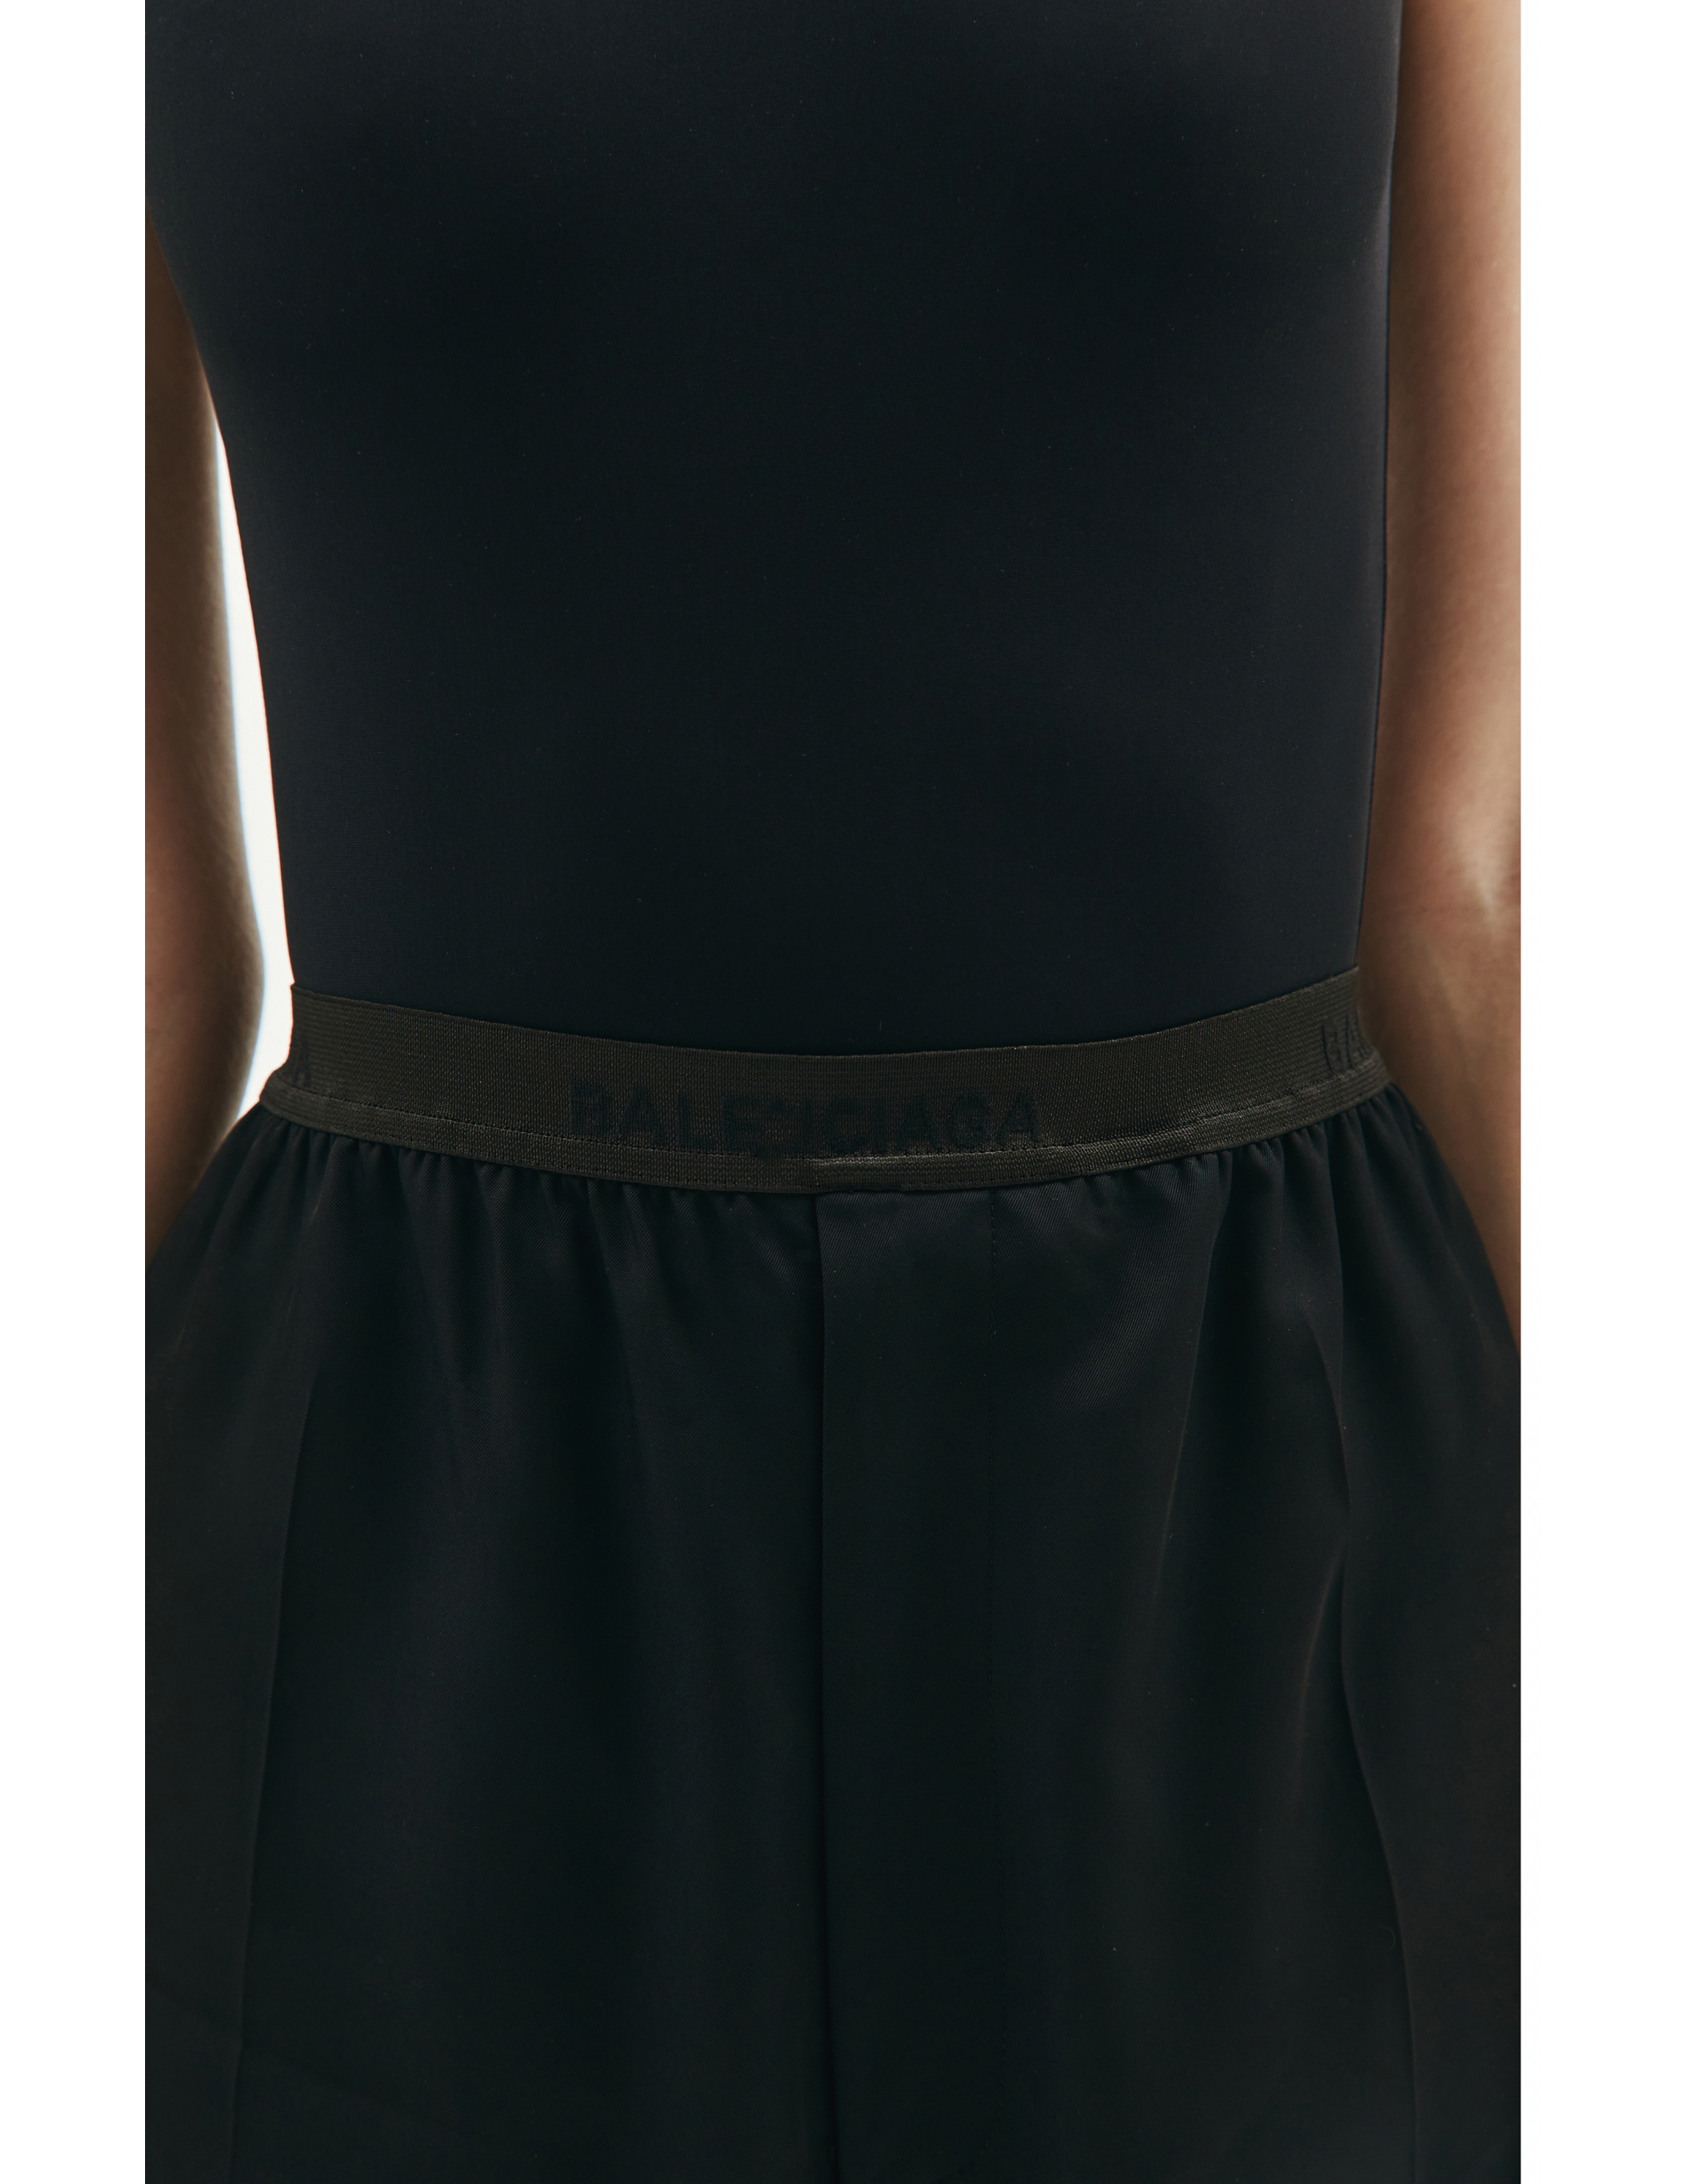 Широкие брюки на резинке с логотипом Balenciaga 675482/TJO25/1000, размер 40;38;36 675482/TJO25/1000 - фото 3